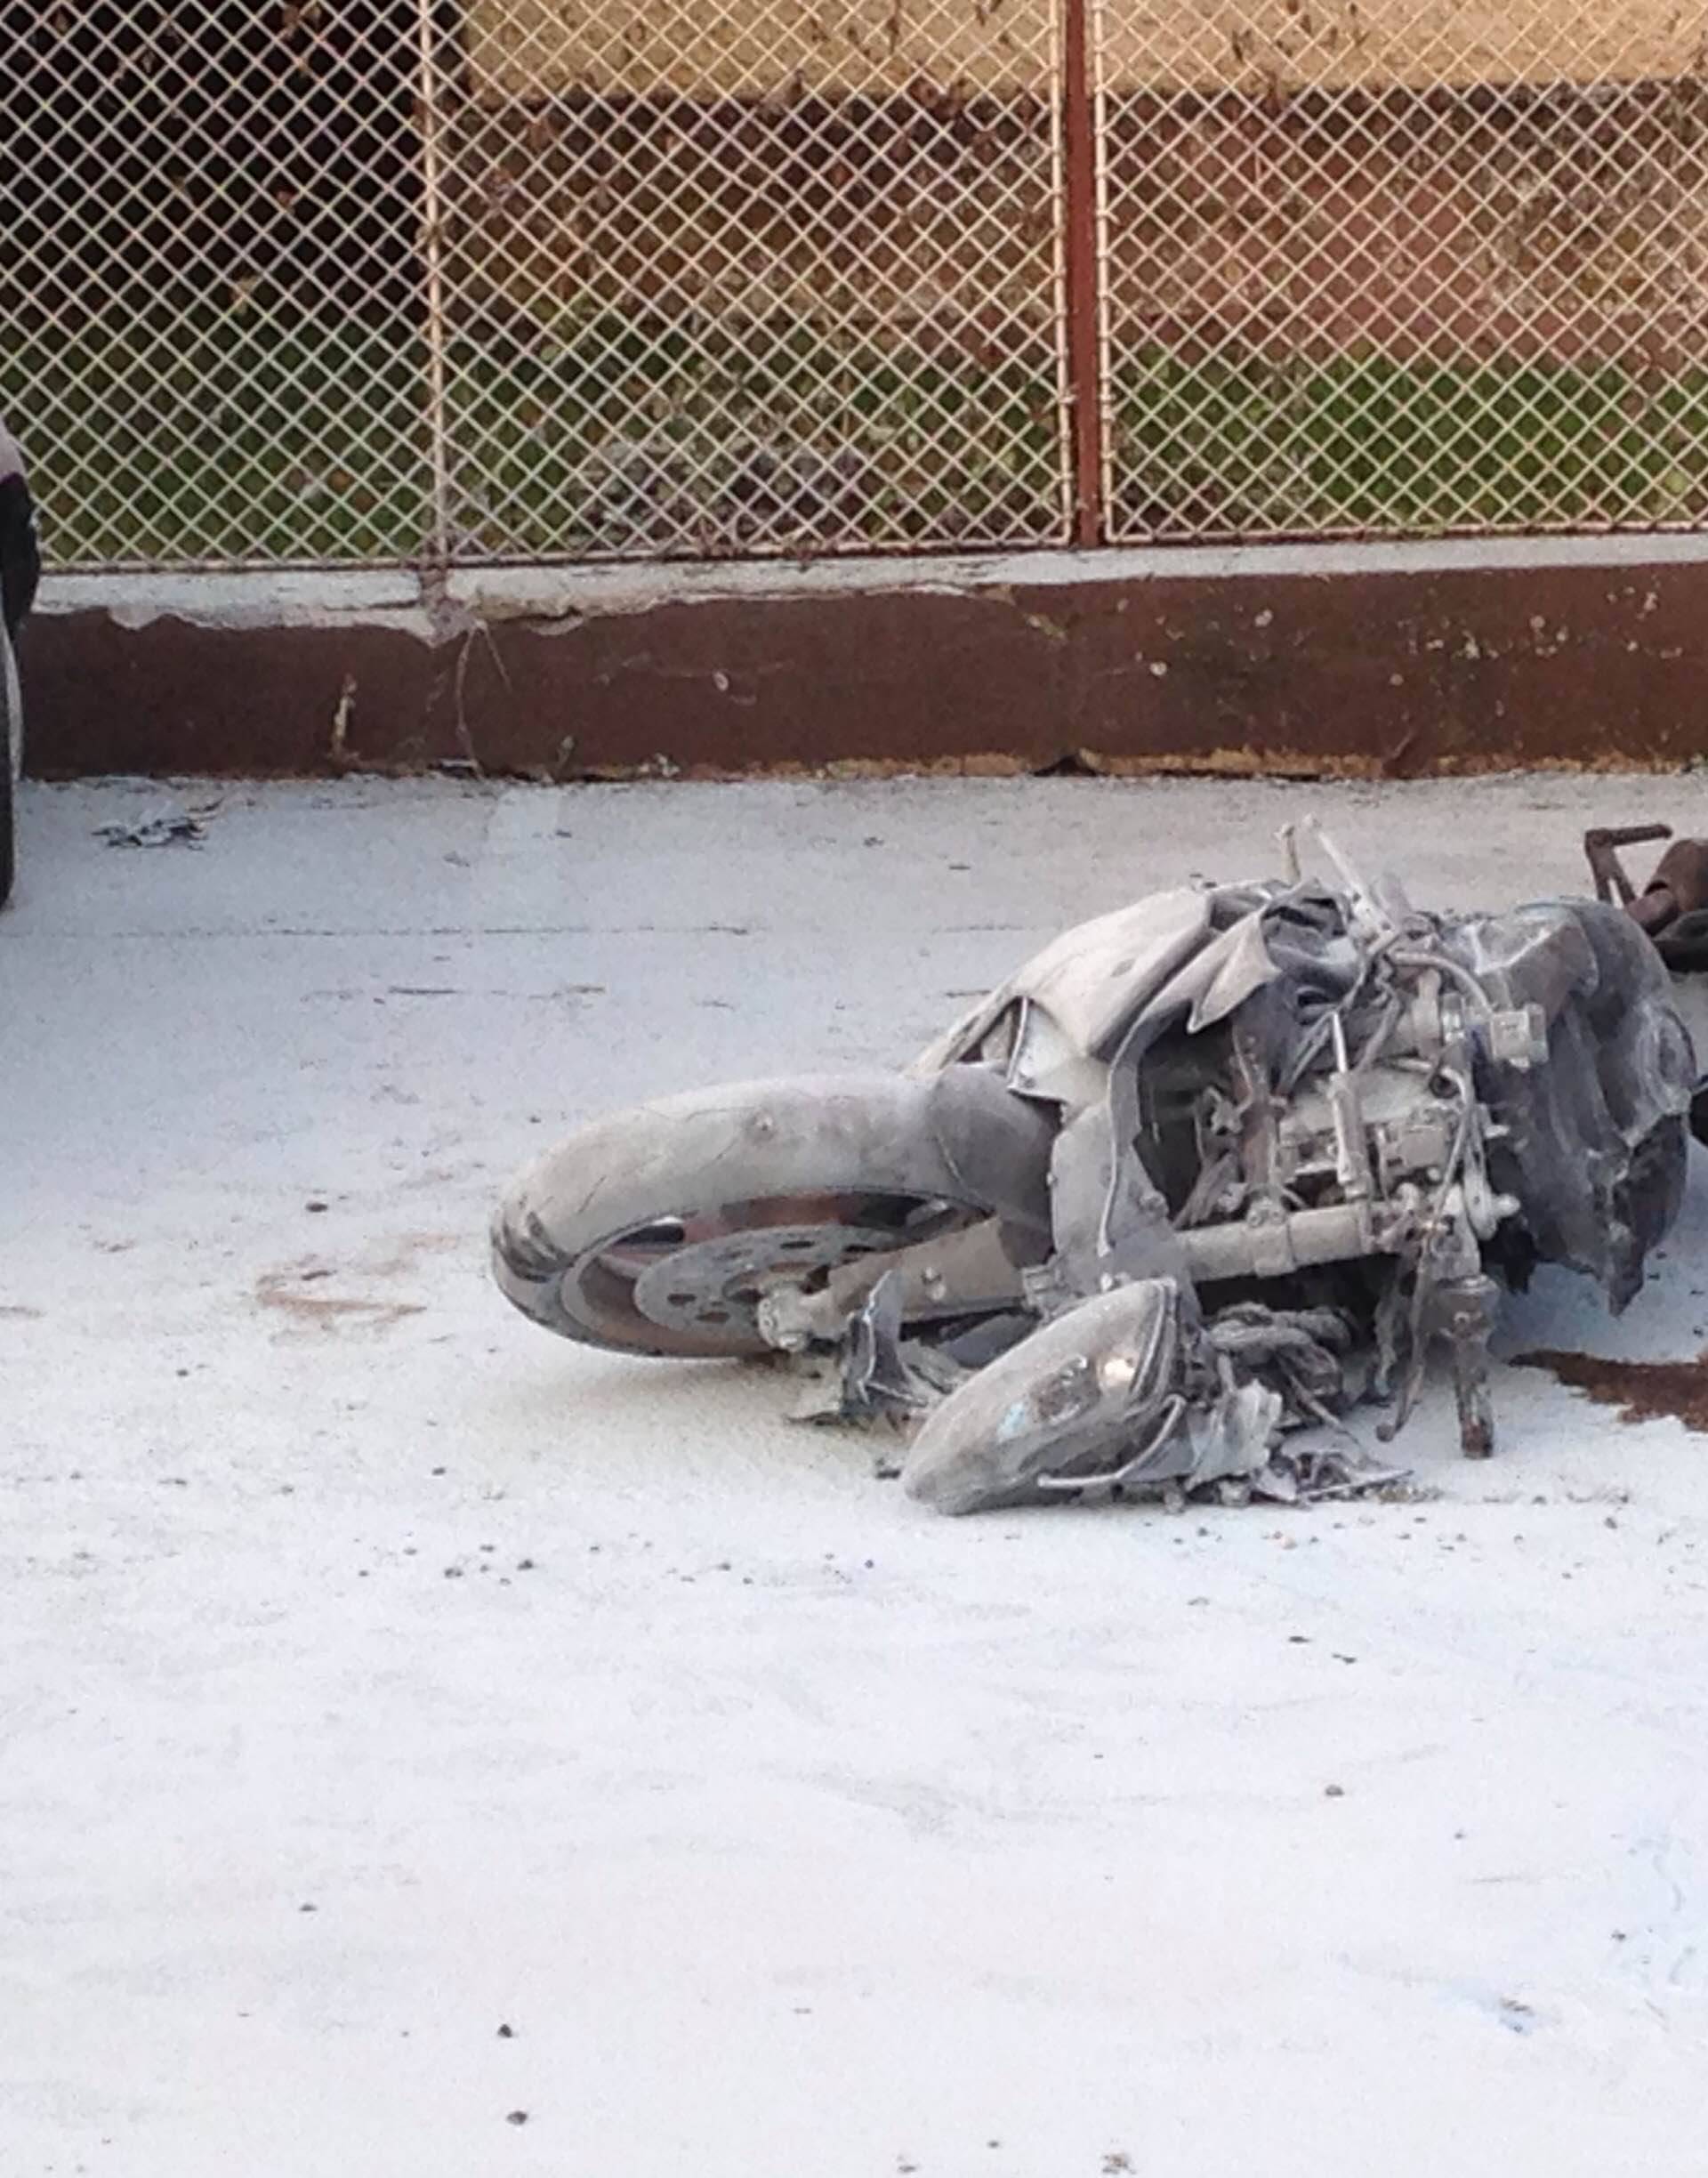 Imao je sreće: Nakon pada, motocikl u potpunosti izgorio